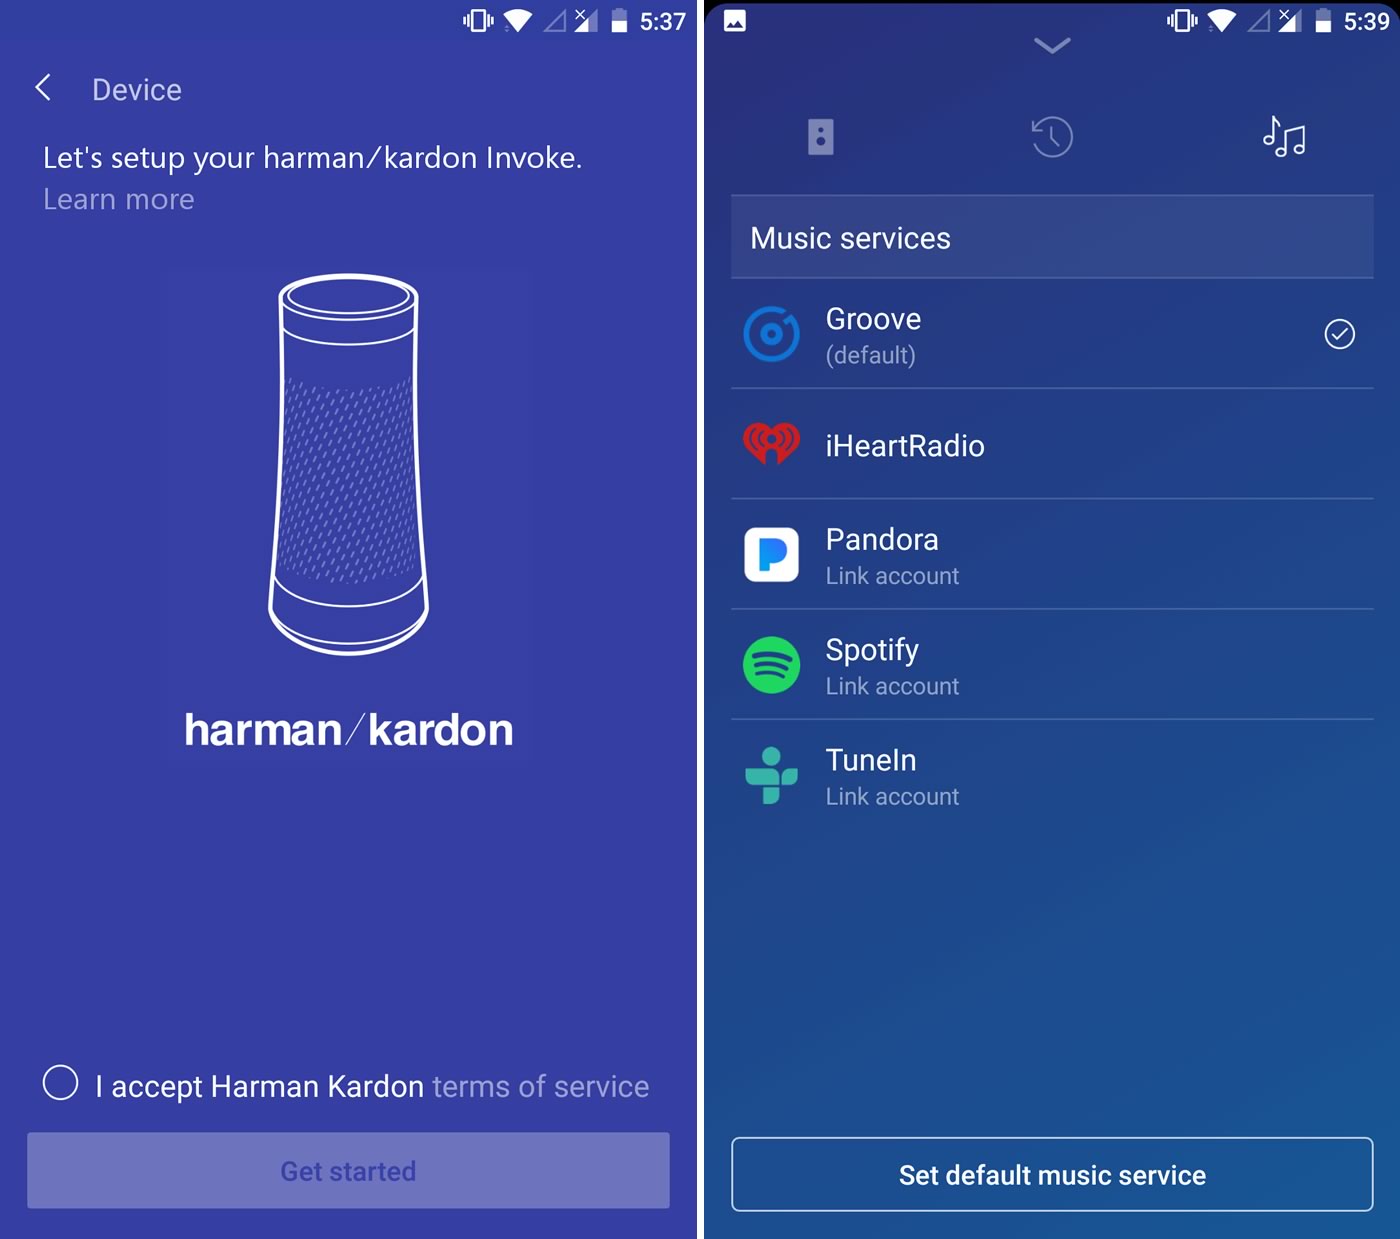 Cortana対応音声アシスタントスピーカー｢Harman Kardon Invoke｣、音楽ストリーミングサービスの｢Spotify｣などをサポート